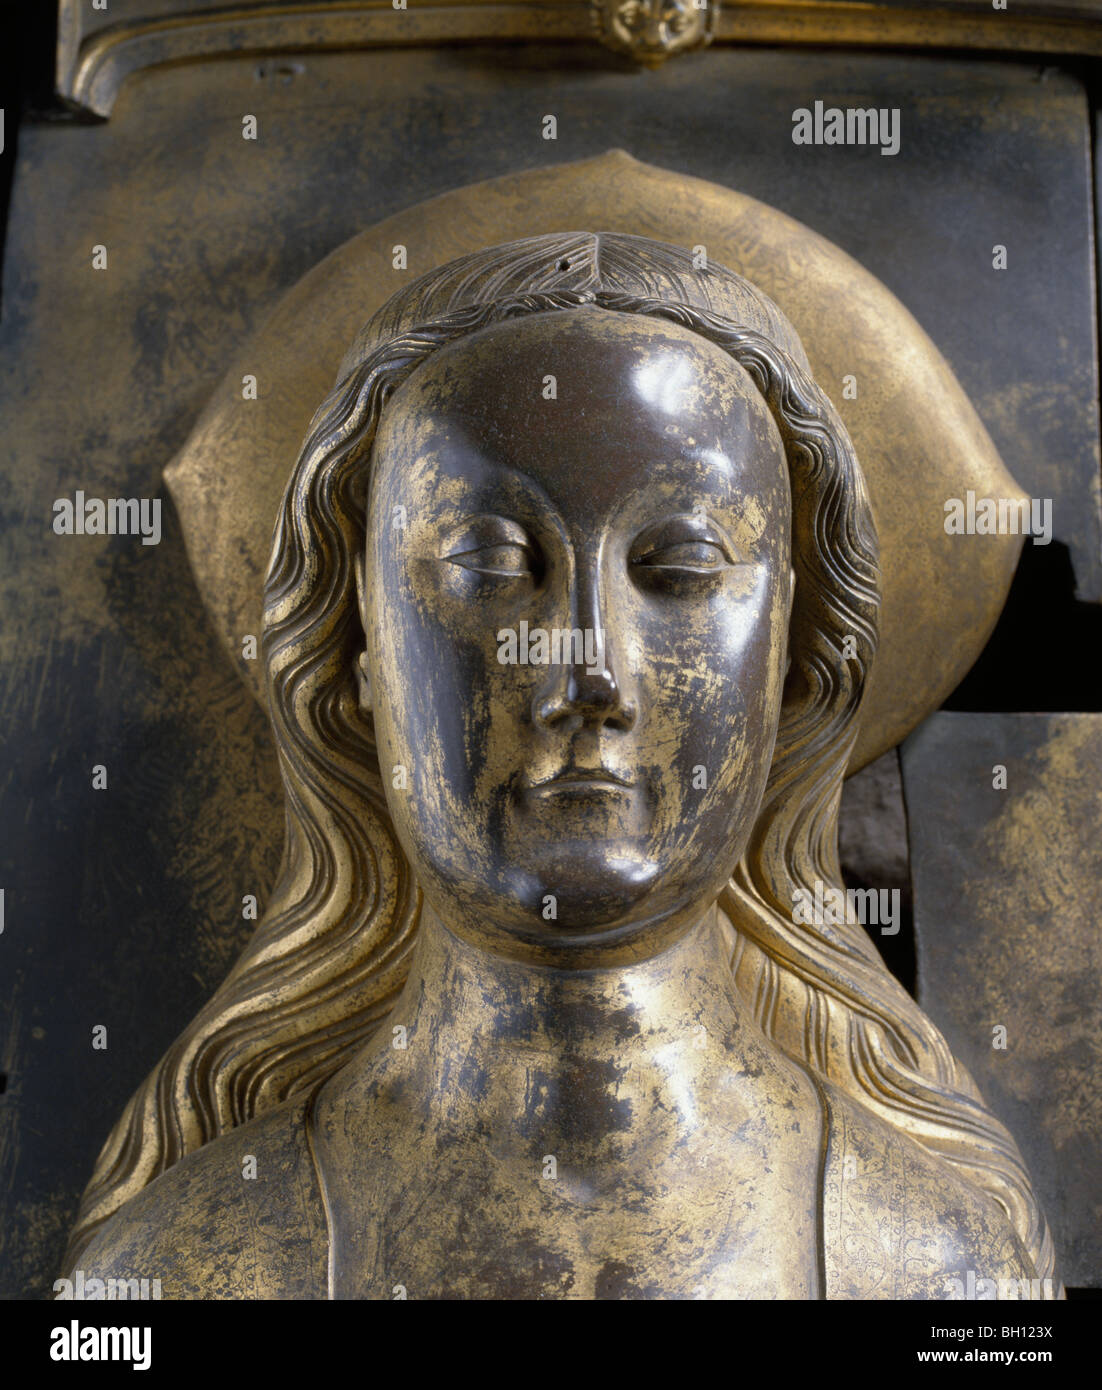 La regina Anna di Boemia in bronzo dorato effige sulla tomba nella Westminster Abbey, Londra Inghilterra. Foto Stock